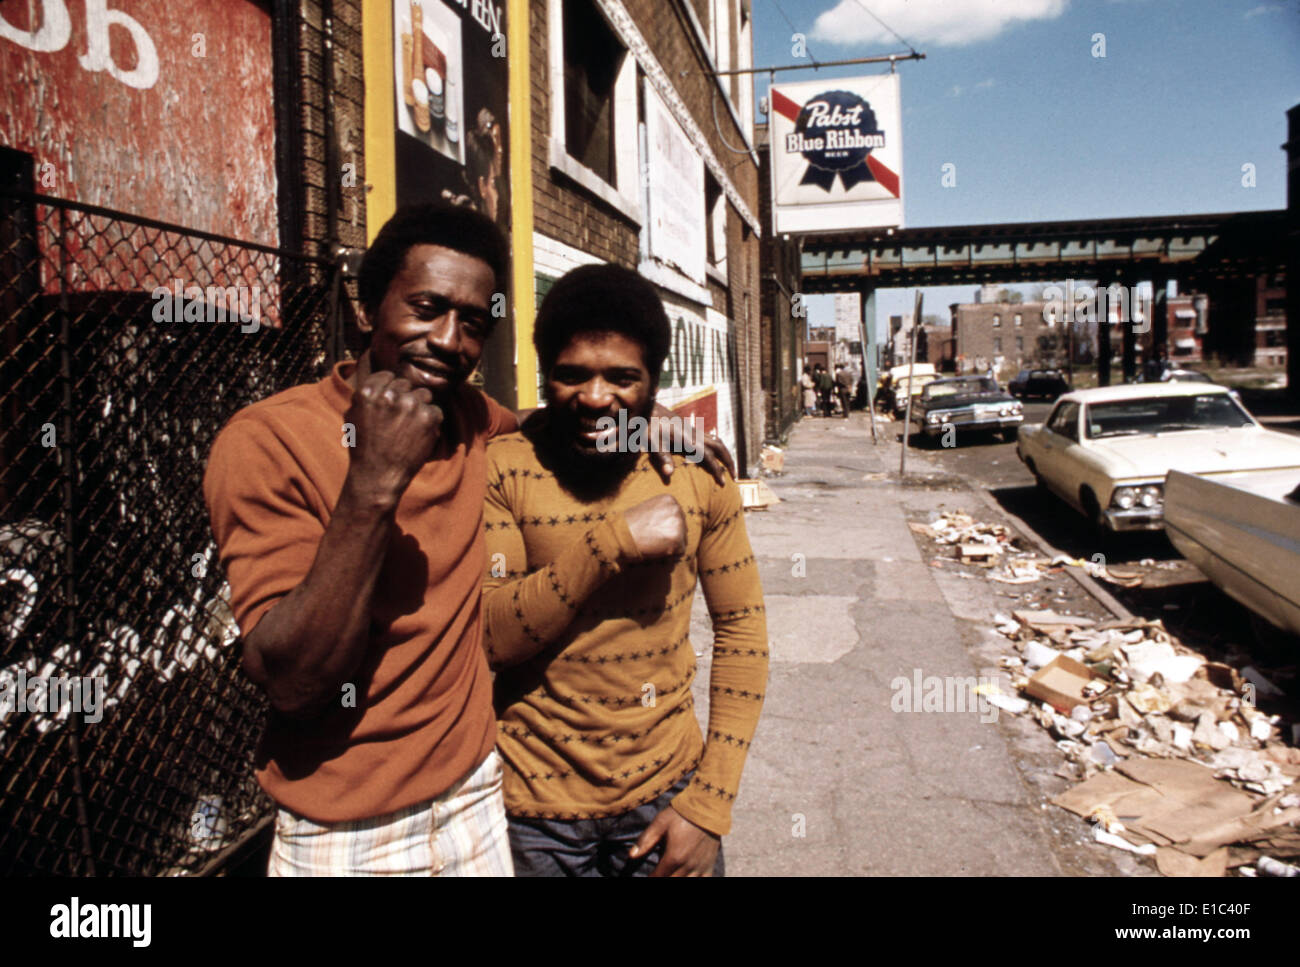 L'Amérique des années 70. Deux jeunes hommes sur le côté sud de Chicago, ca. 1973. Banque D'Images